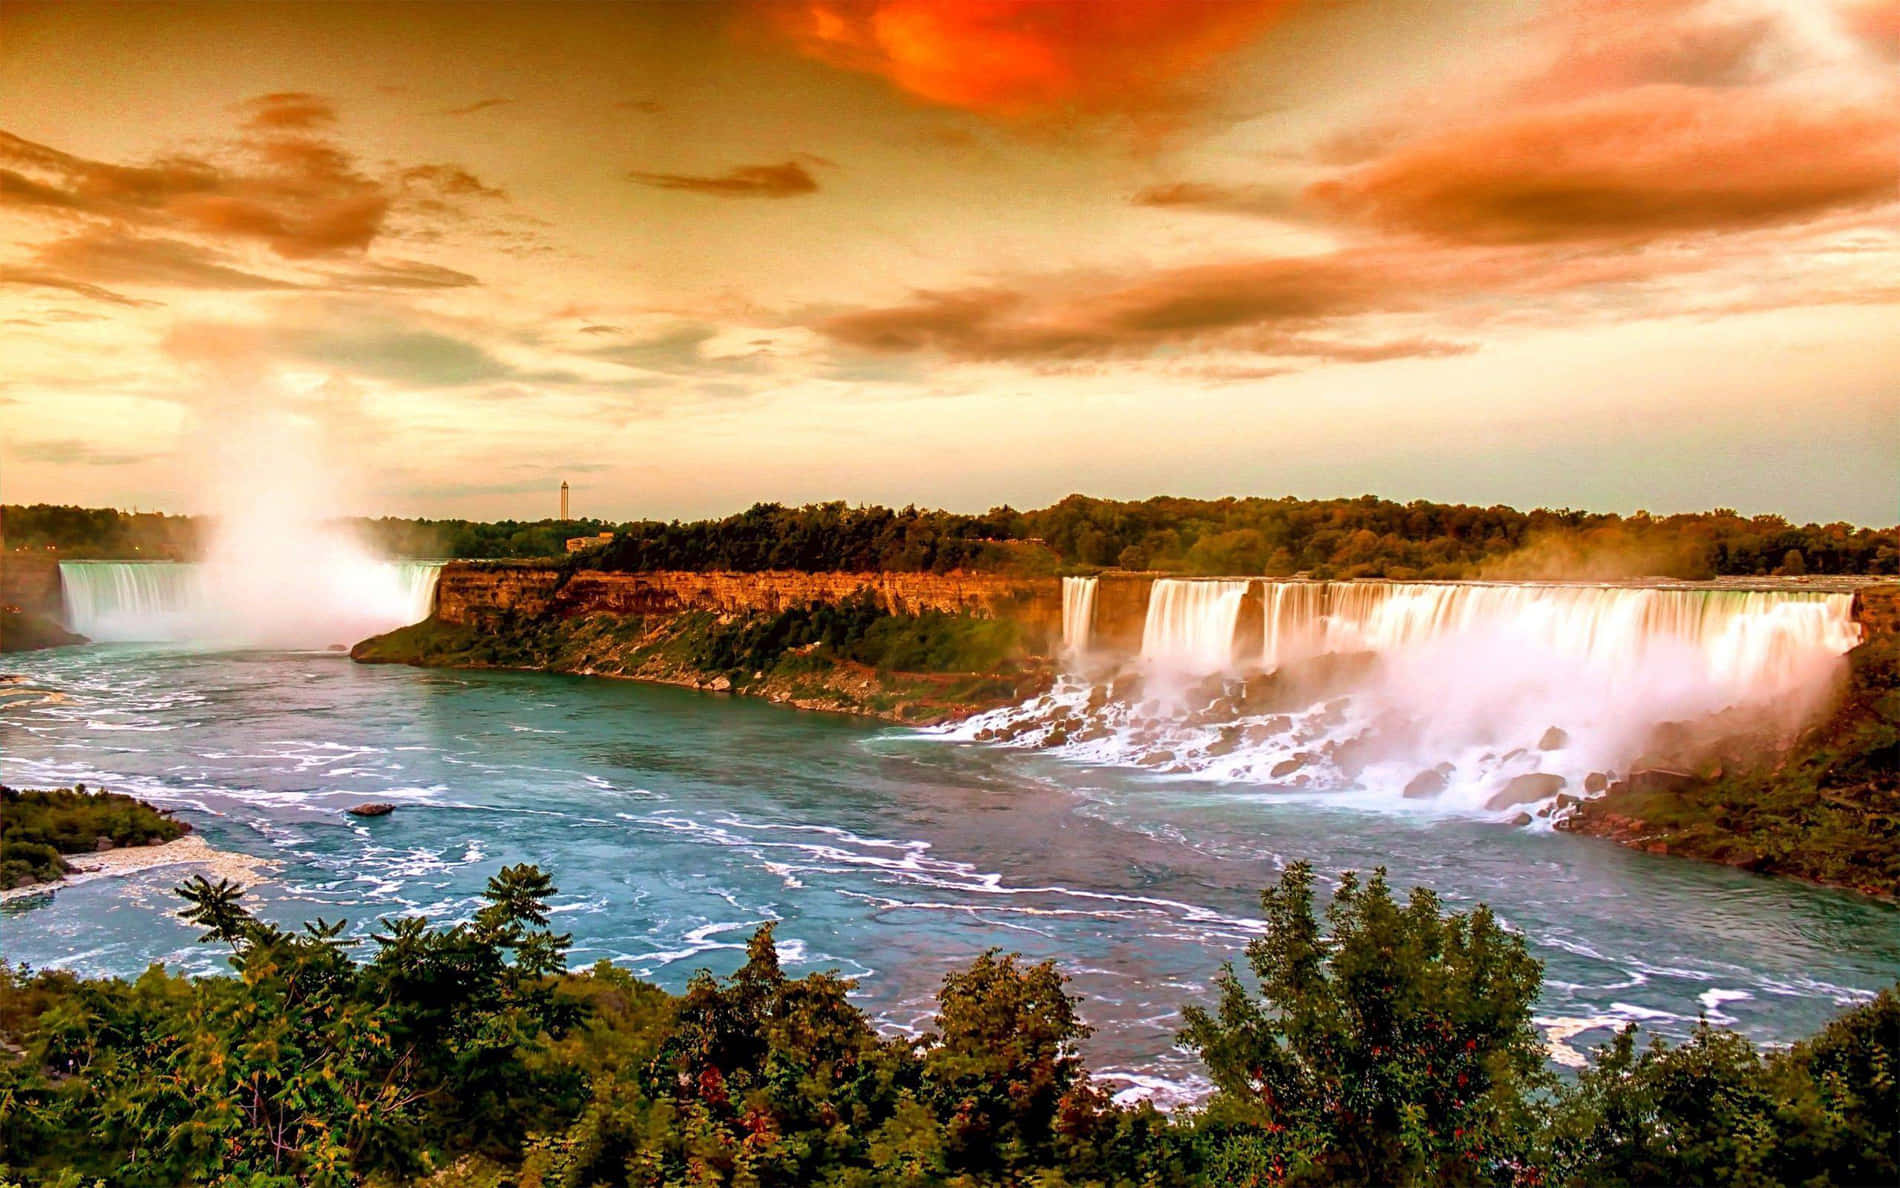 Unosguardo Aereo Alle Iconiche Cascate Del Niagara In Canada.